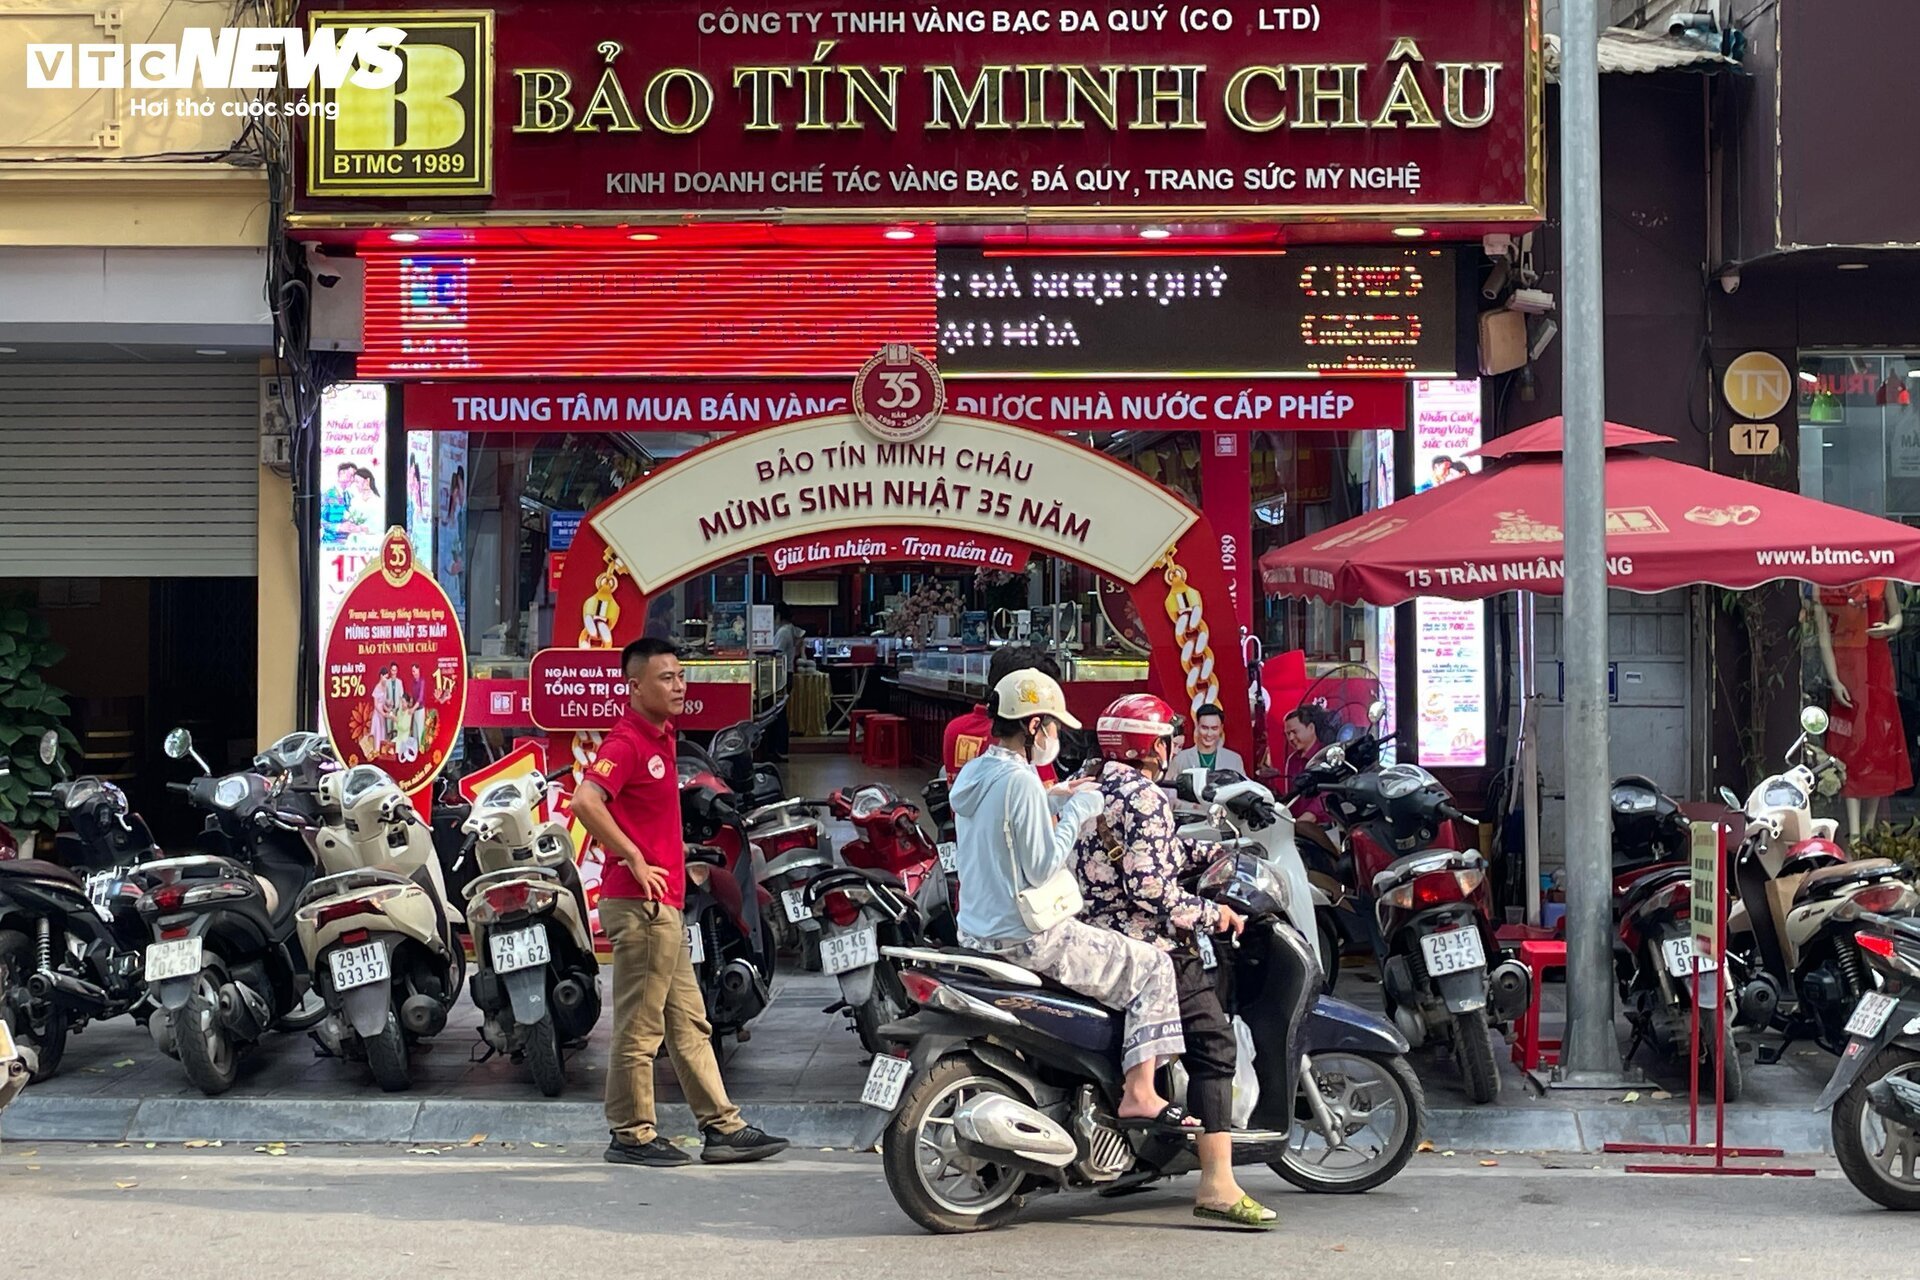 Giá vàng biến động mạnh, cửa hàng ở Hà Nội nhiều lúc ngừng bán- Ảnh 4.